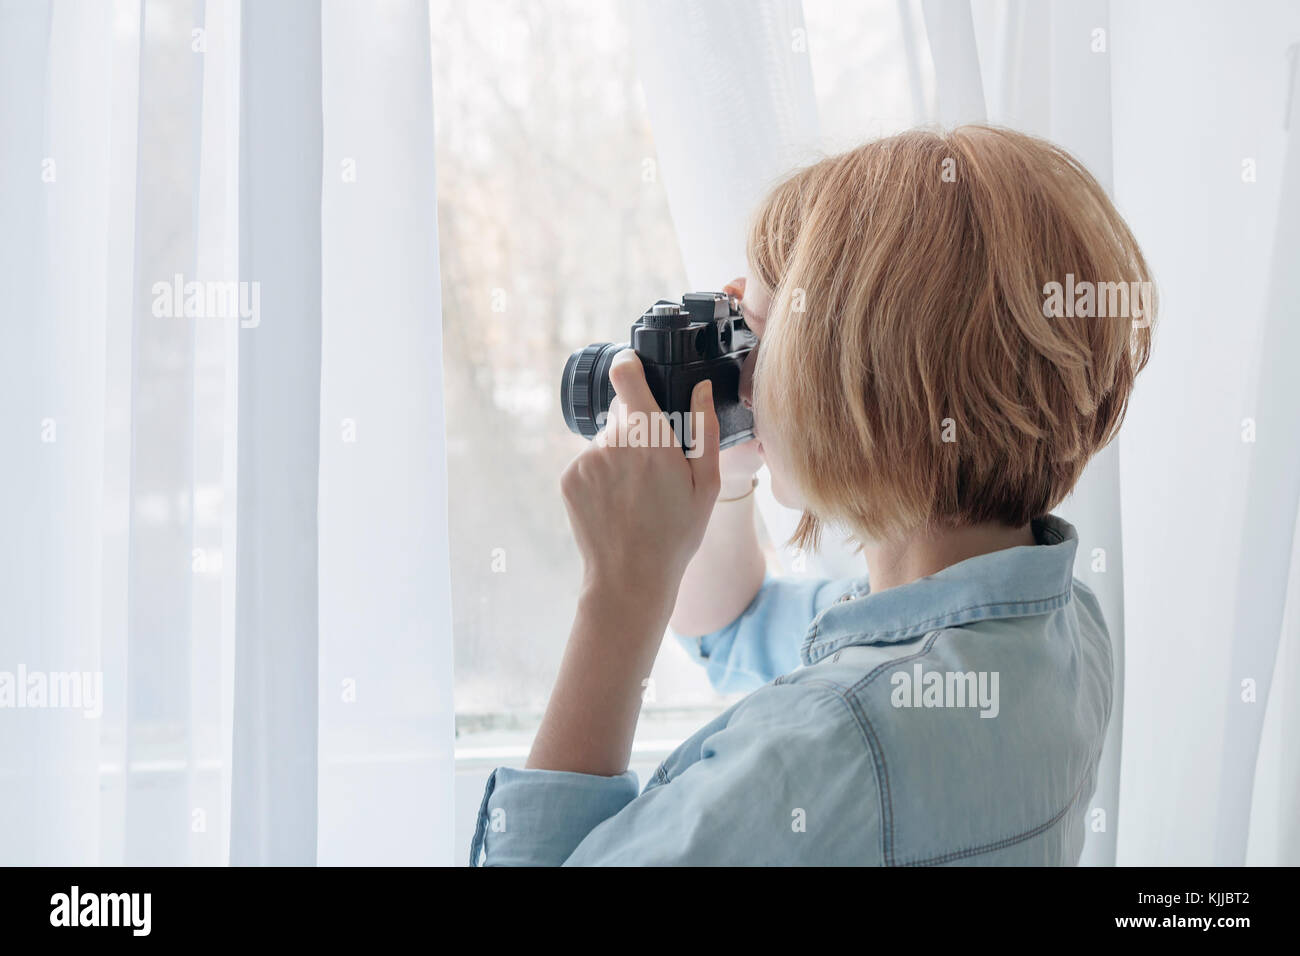 Woman taking photos through the window Stock Photo